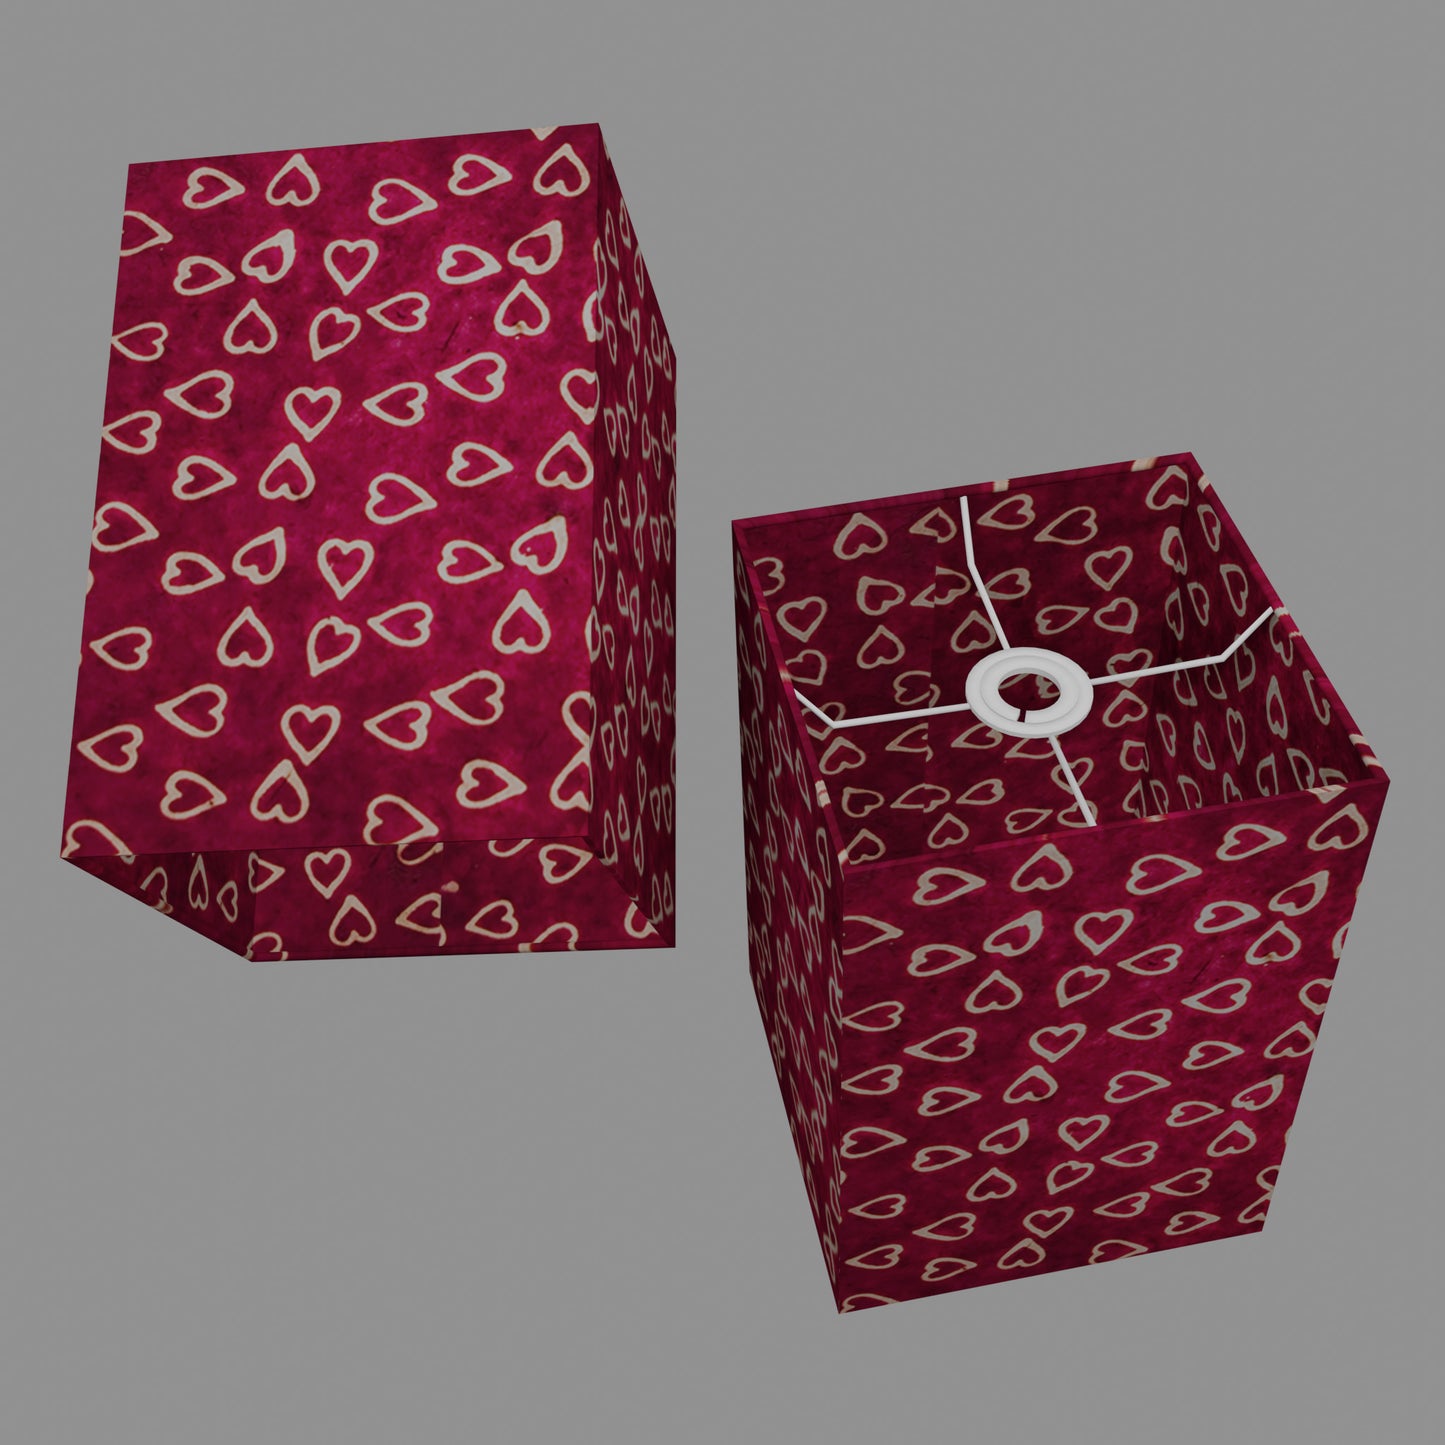 Square Lamp Shade - P16 - Batik Hearts on Cranberry, 20cm(w) x 30cm(h) x 20cm(d)